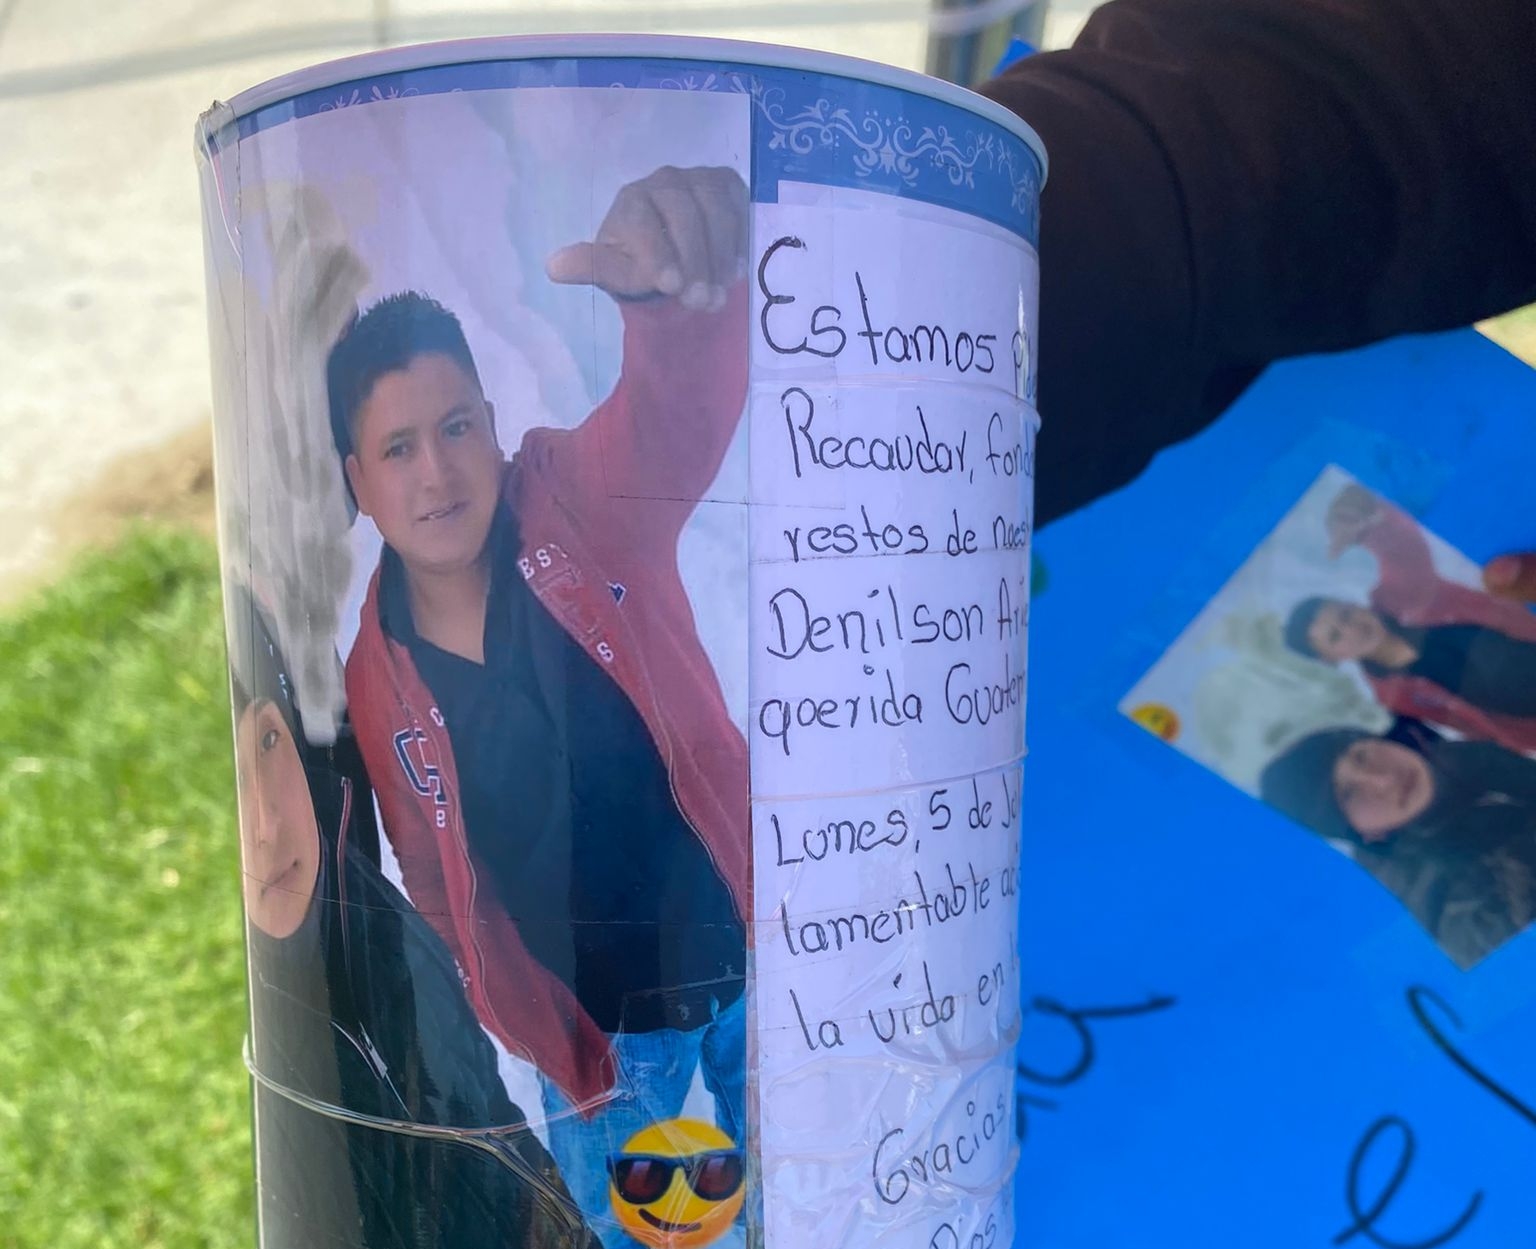 La muerte del guatemalteco Denilson Ariel Tucubal movilizó a compatriotas a recaudar fondos para apoyar a su familia. (Foto Prensa Libre: Cortesía)